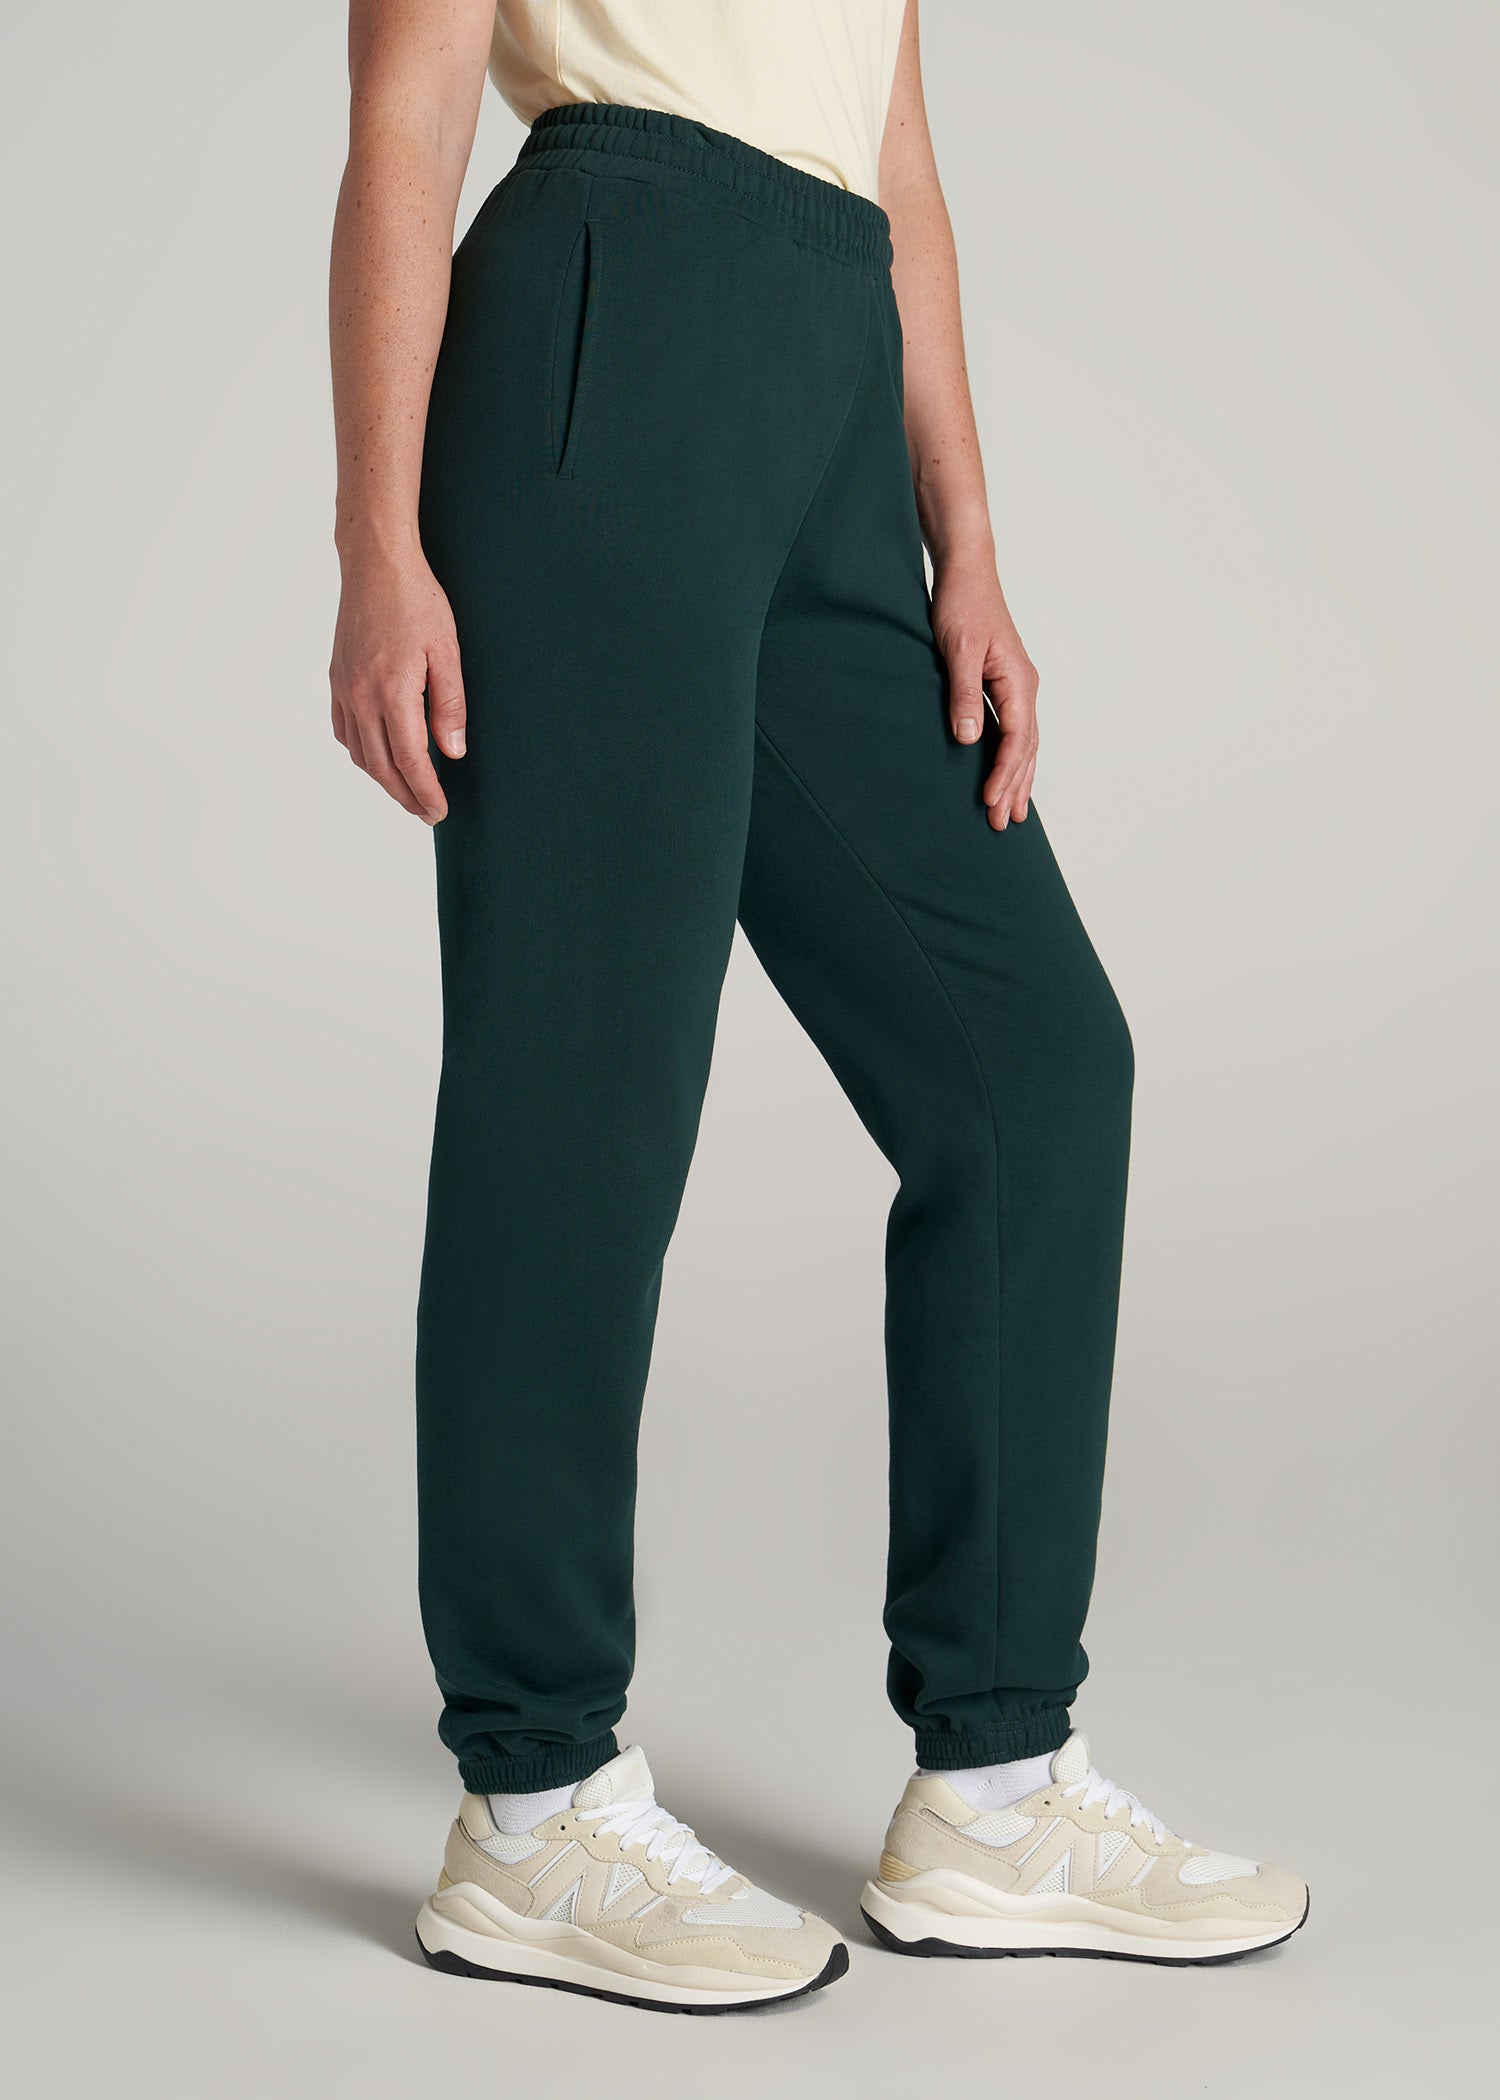 Wearever Fleece Open-Bottom Sweatpants for Tall Women Midnight Blue, American Tall